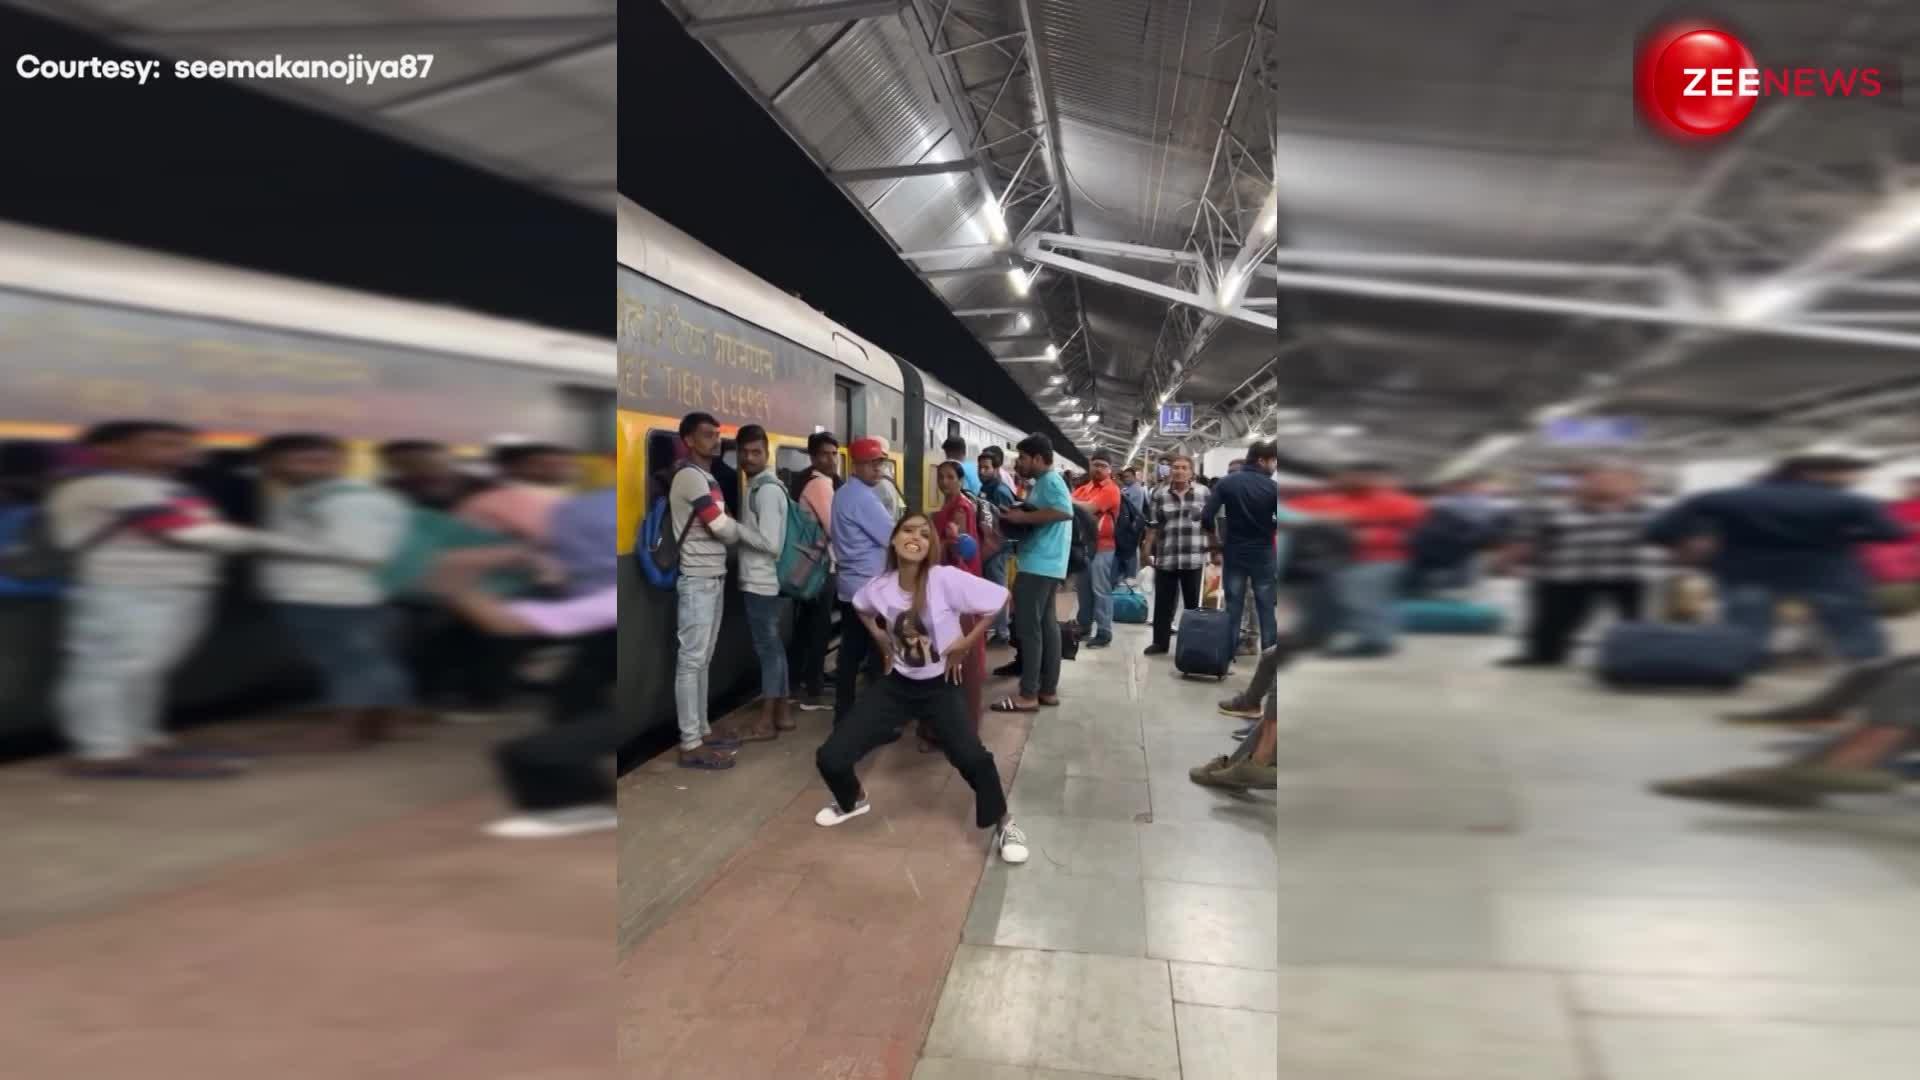 बाप रे! ट्रेन स्टेशन पर लोट-लोटकर नाची महिला, खतरनाक डांस देख  छूट जाएगी आपकी भी हंसी, देखें VIDEO